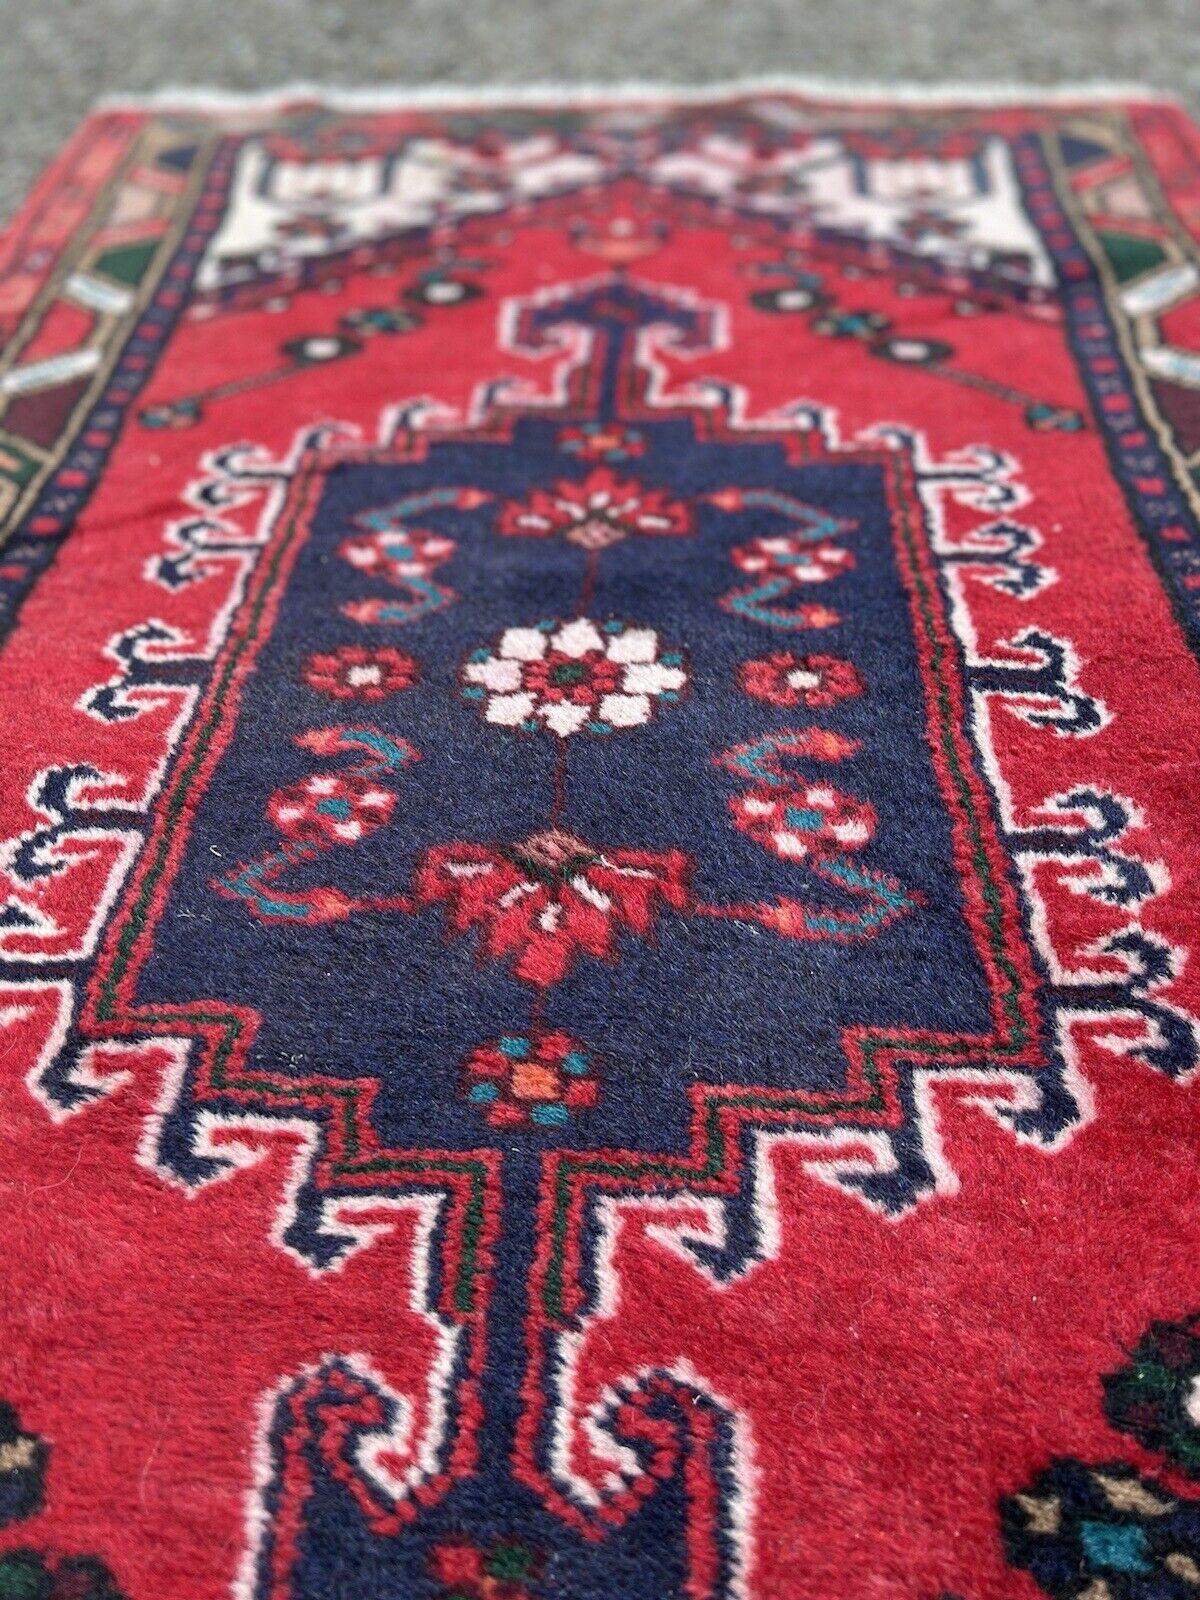 Handgefertigter Hamadan-Teppich im persischen Vintage-Stil
Überblick:
Treten Sie ein in die Pracht unseres handgefertigten Hamadan-Teppichs im persischen Vintage-Stil, ein Zeugnis reicher Tradition und dauerhafter Handwerkskunst. Dieses authentische